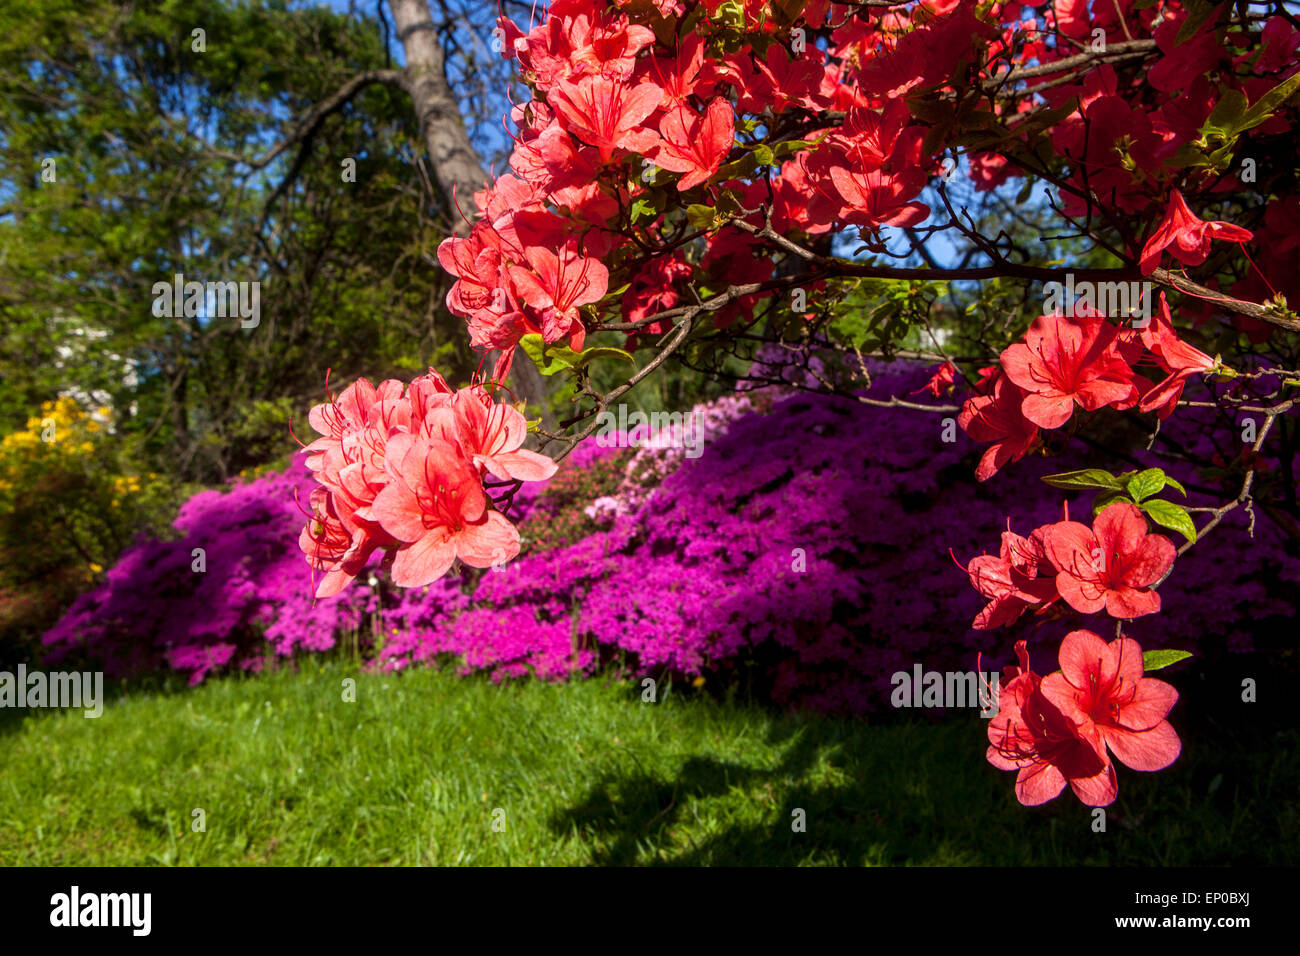 Rhododendren und blühende Azaleen, blühende Sträucher im Frühling Grenze Gartenblumen Stockfoto